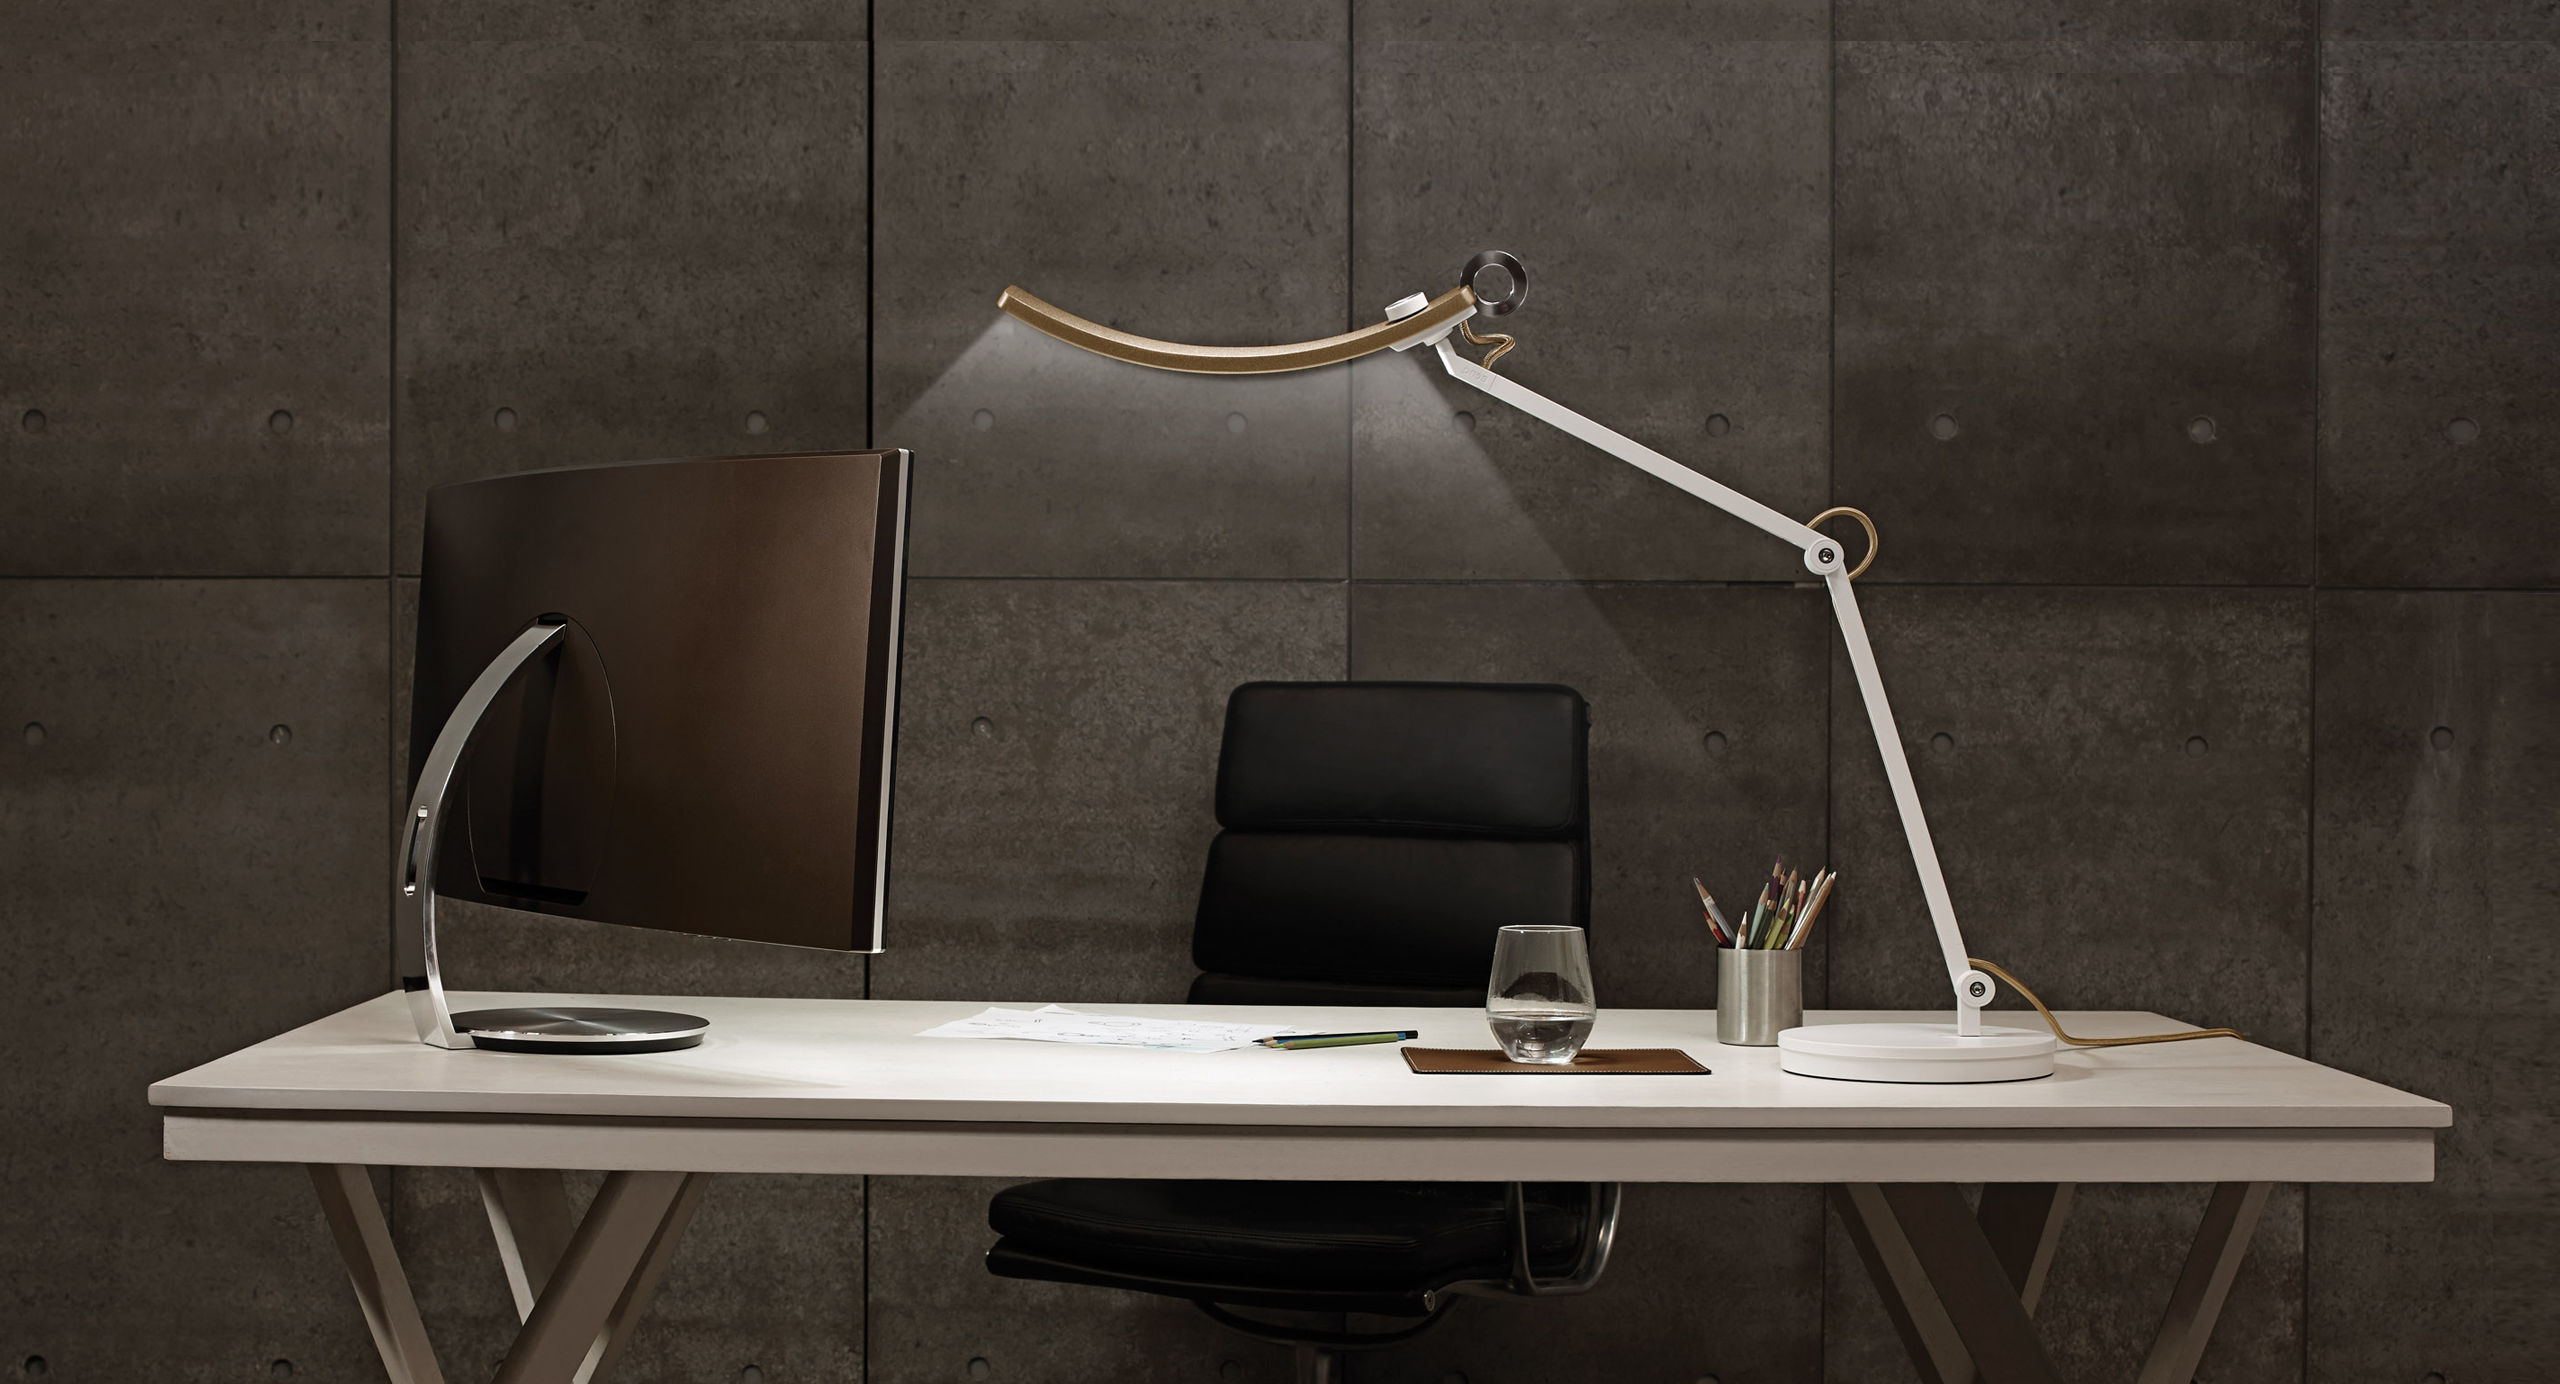 Halo Desk Lamp Lite - Adjustable LED Desk Lamp